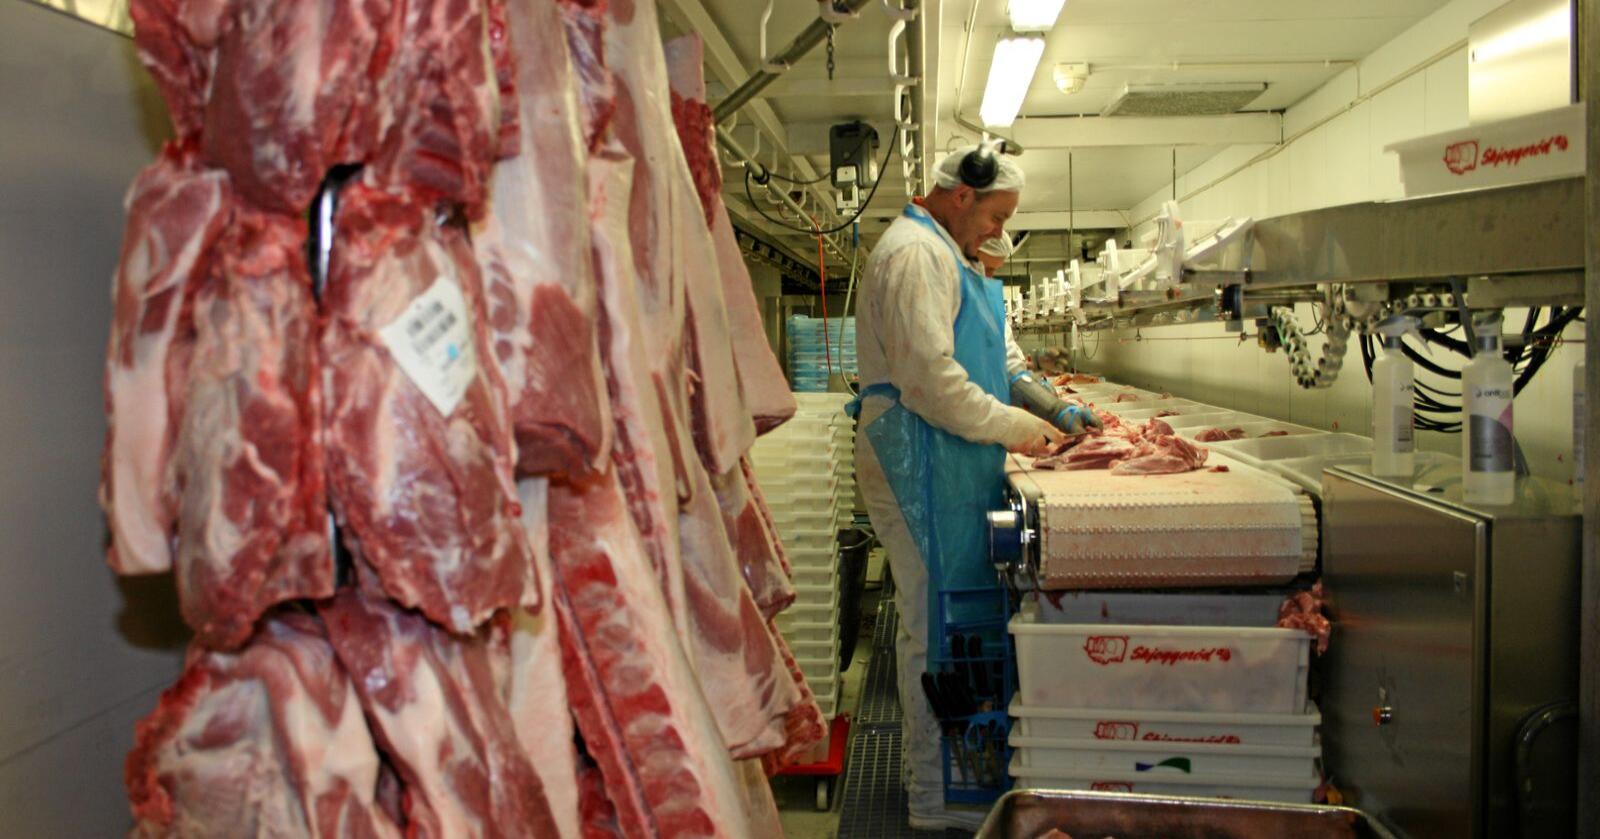 Fatland er mest kjent for produksjon av kjøtt, men produksjon av vegetarprodukter utgjør stadig en større andel. Foto: Bjarne Bekkeheien Aase